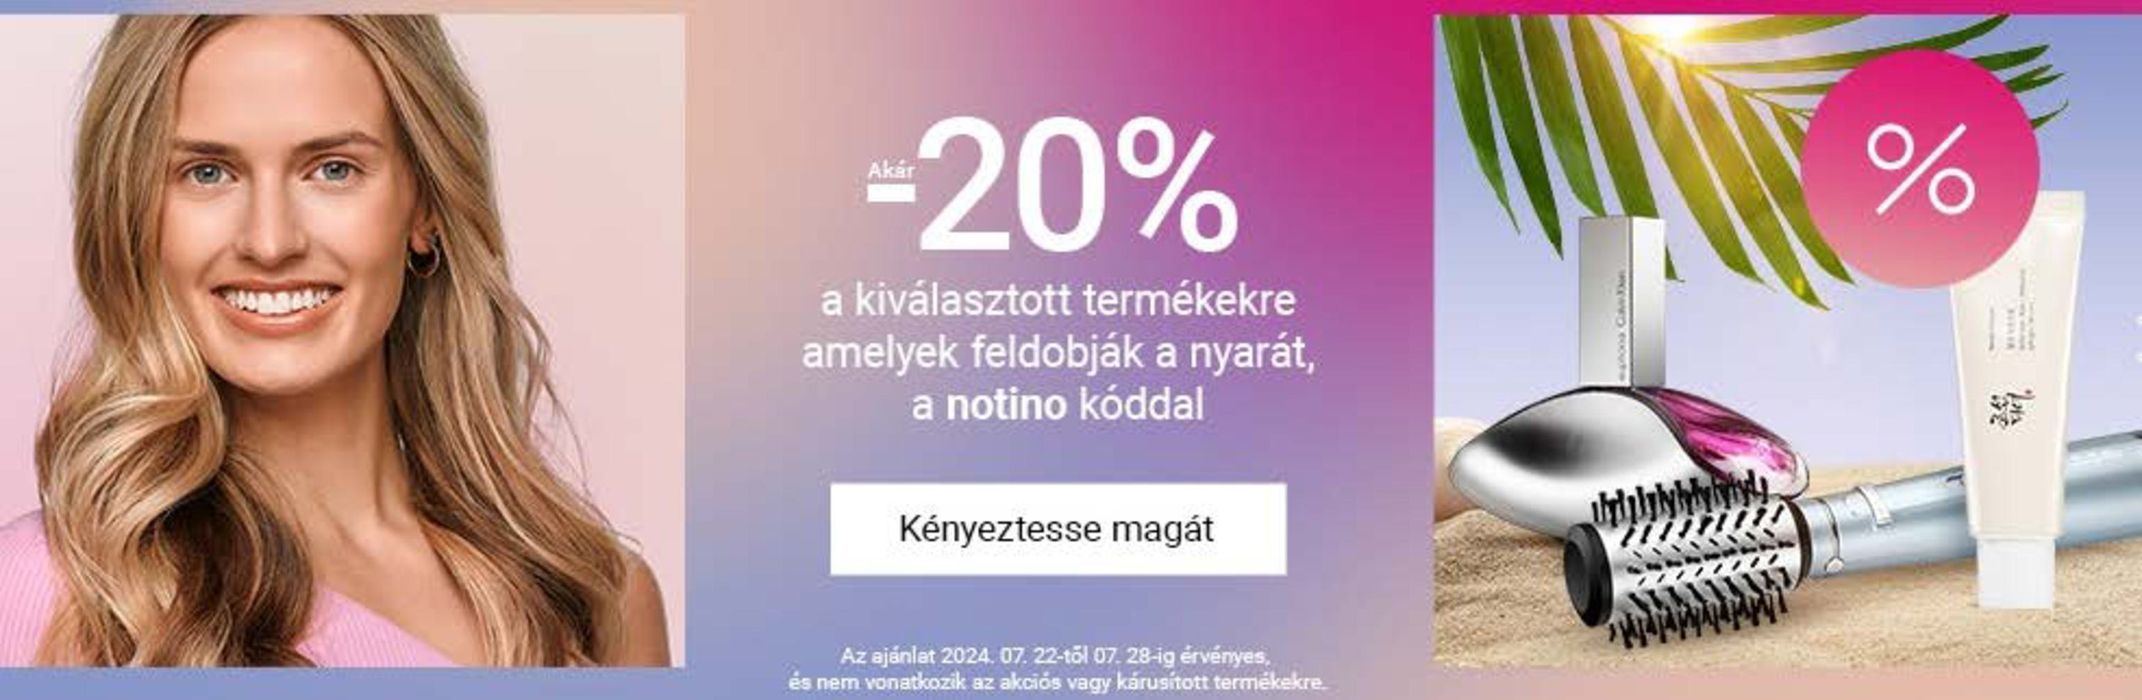 Notino katalógus, Budapest | Akár 20% a kiválasztott termékekre amelyek feldobják a nyarát, a notino kóddal | 2024. 07. 22. - 2024. 07. 28.